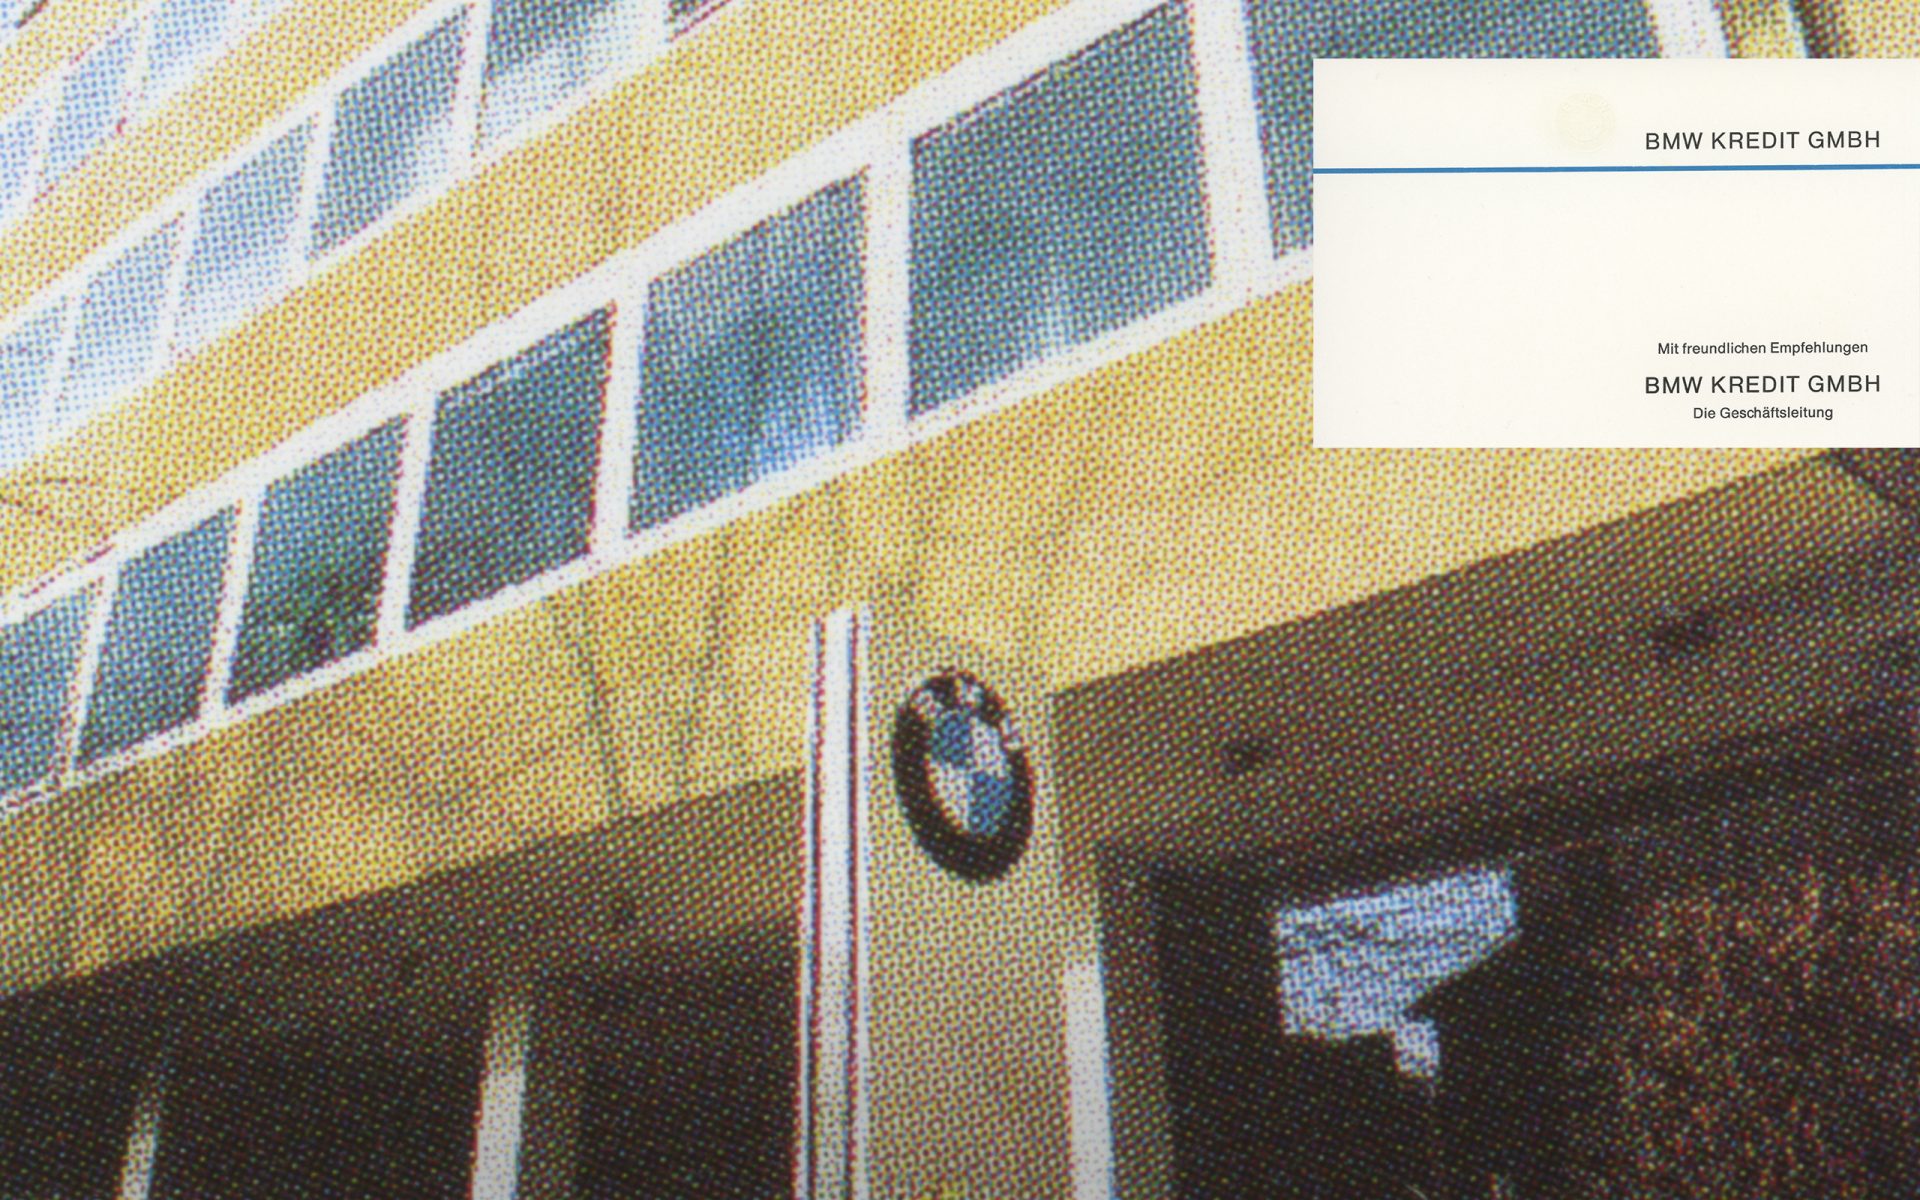 Die BMW Kred it GmbH nimmt ihre Arbeit auf.